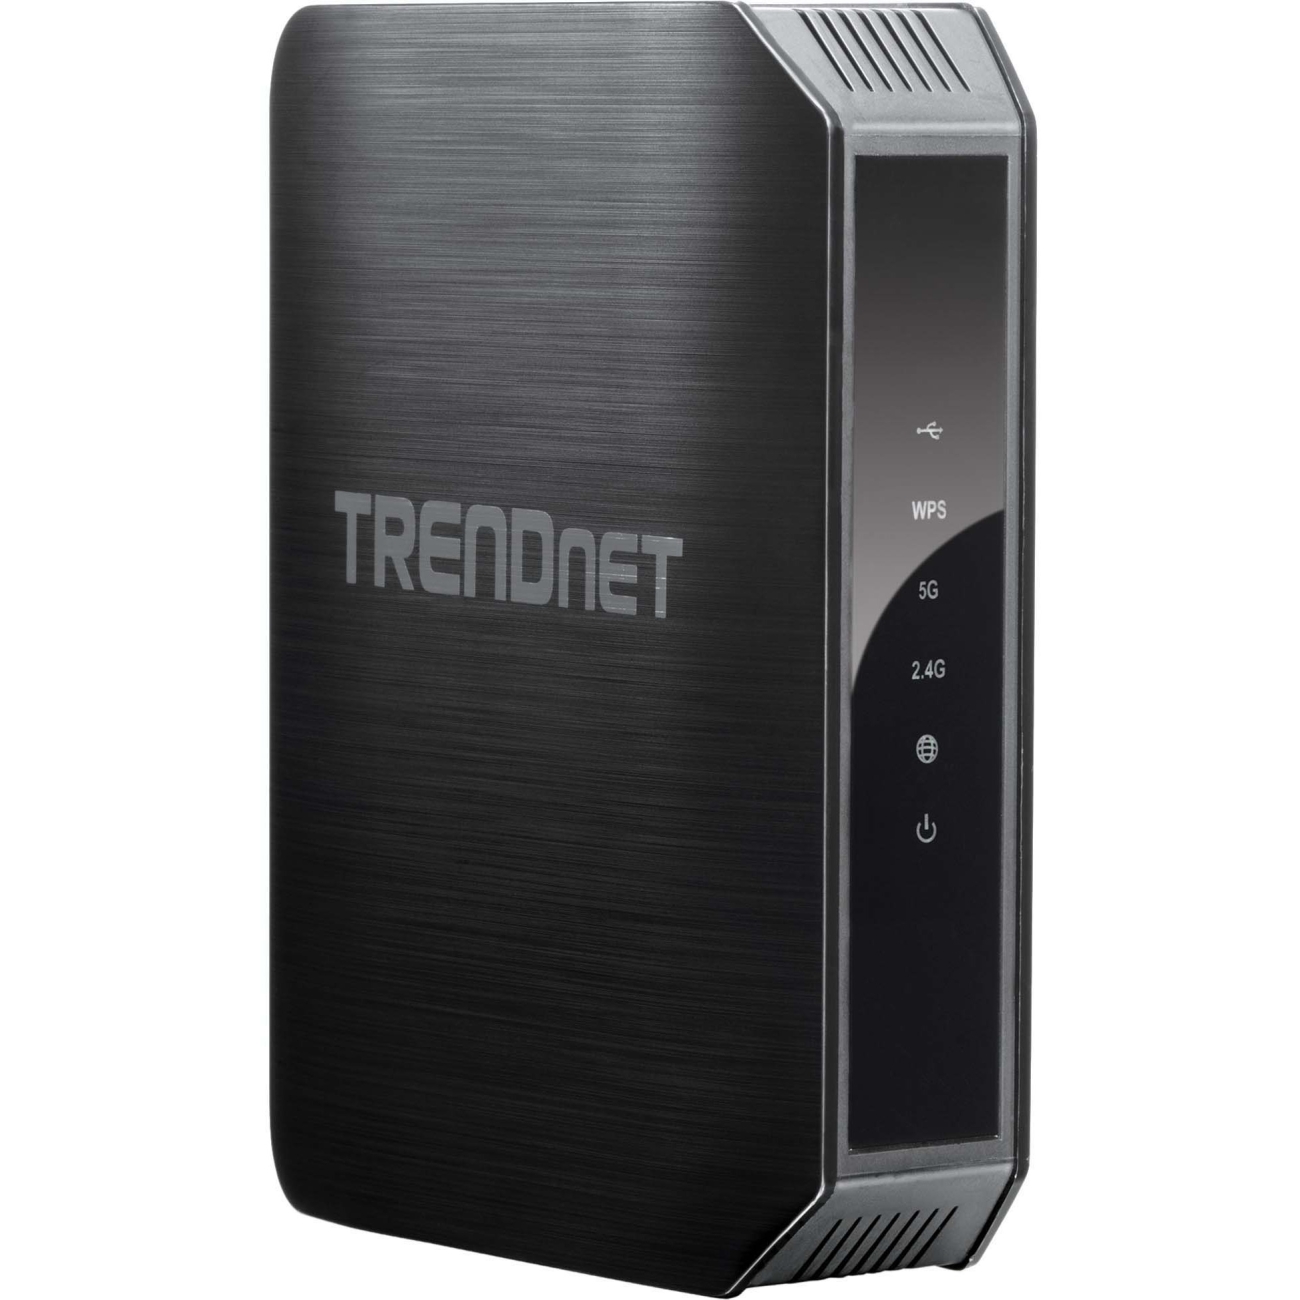 TRENDnet TEW-813DRU - router - 802.11a/b/g/n/ac (draft 2.0) - desktop - image 2 of 6